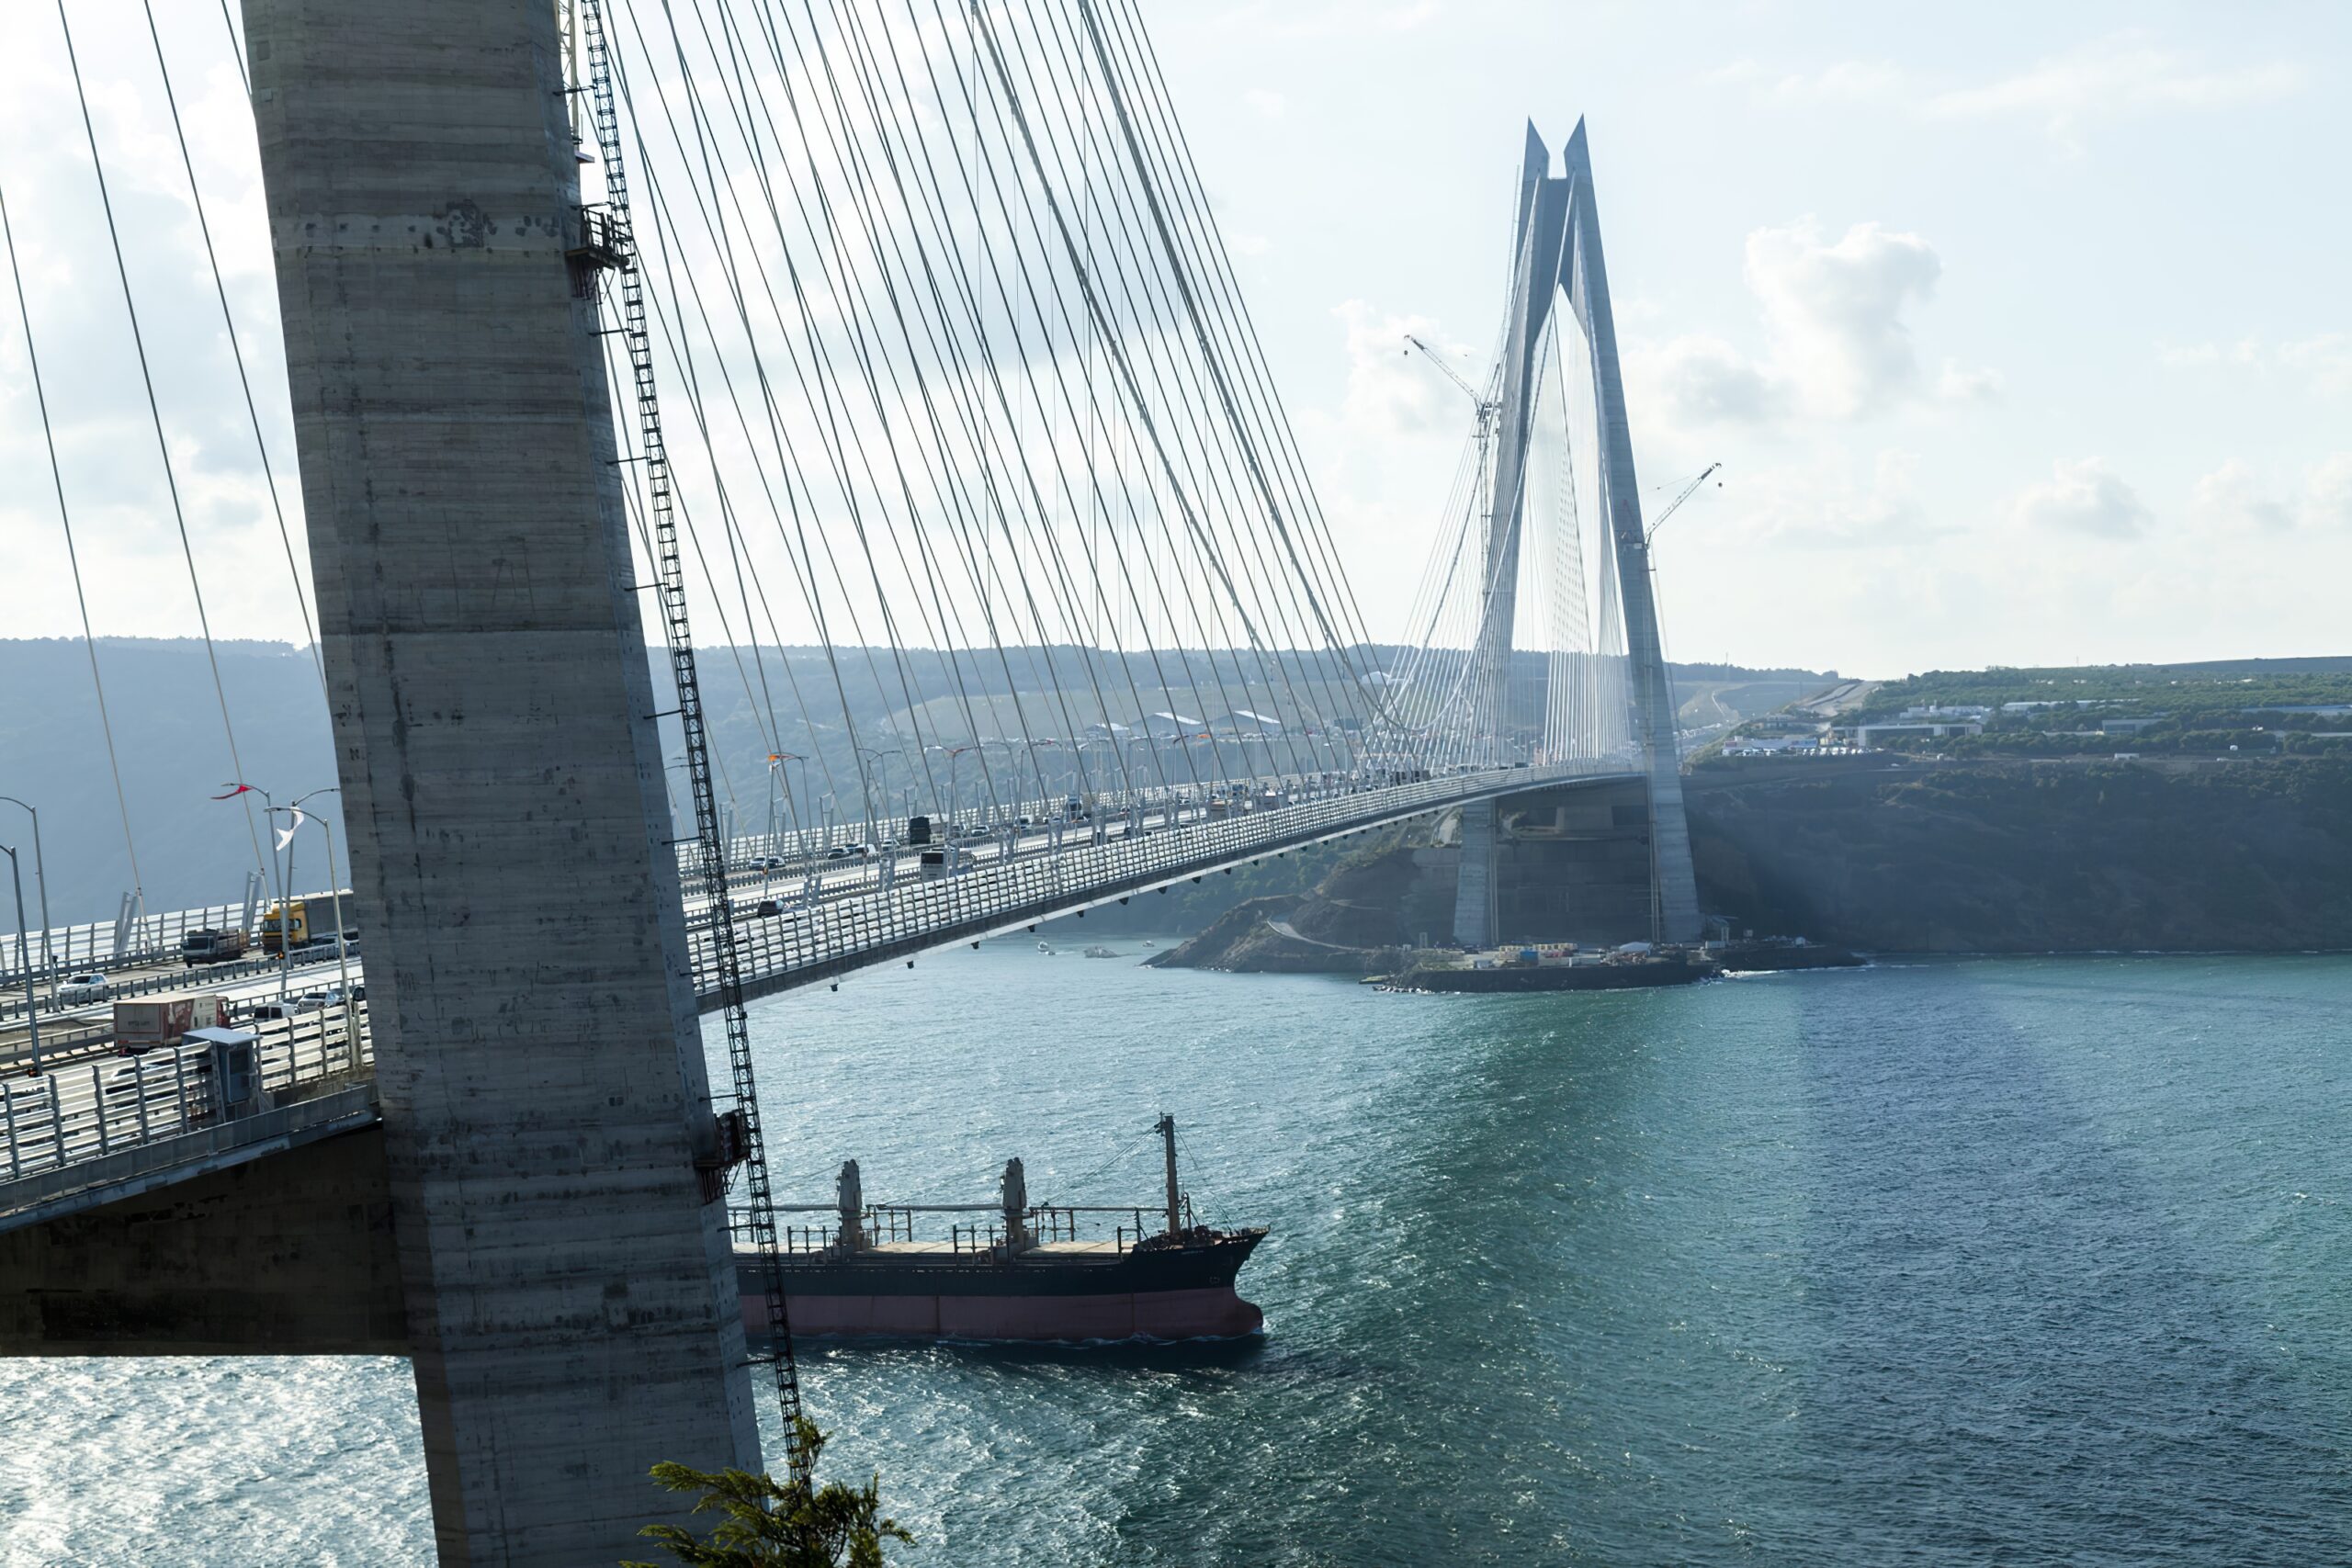 Turchia: i progetti di investimento nelle infrastrutture